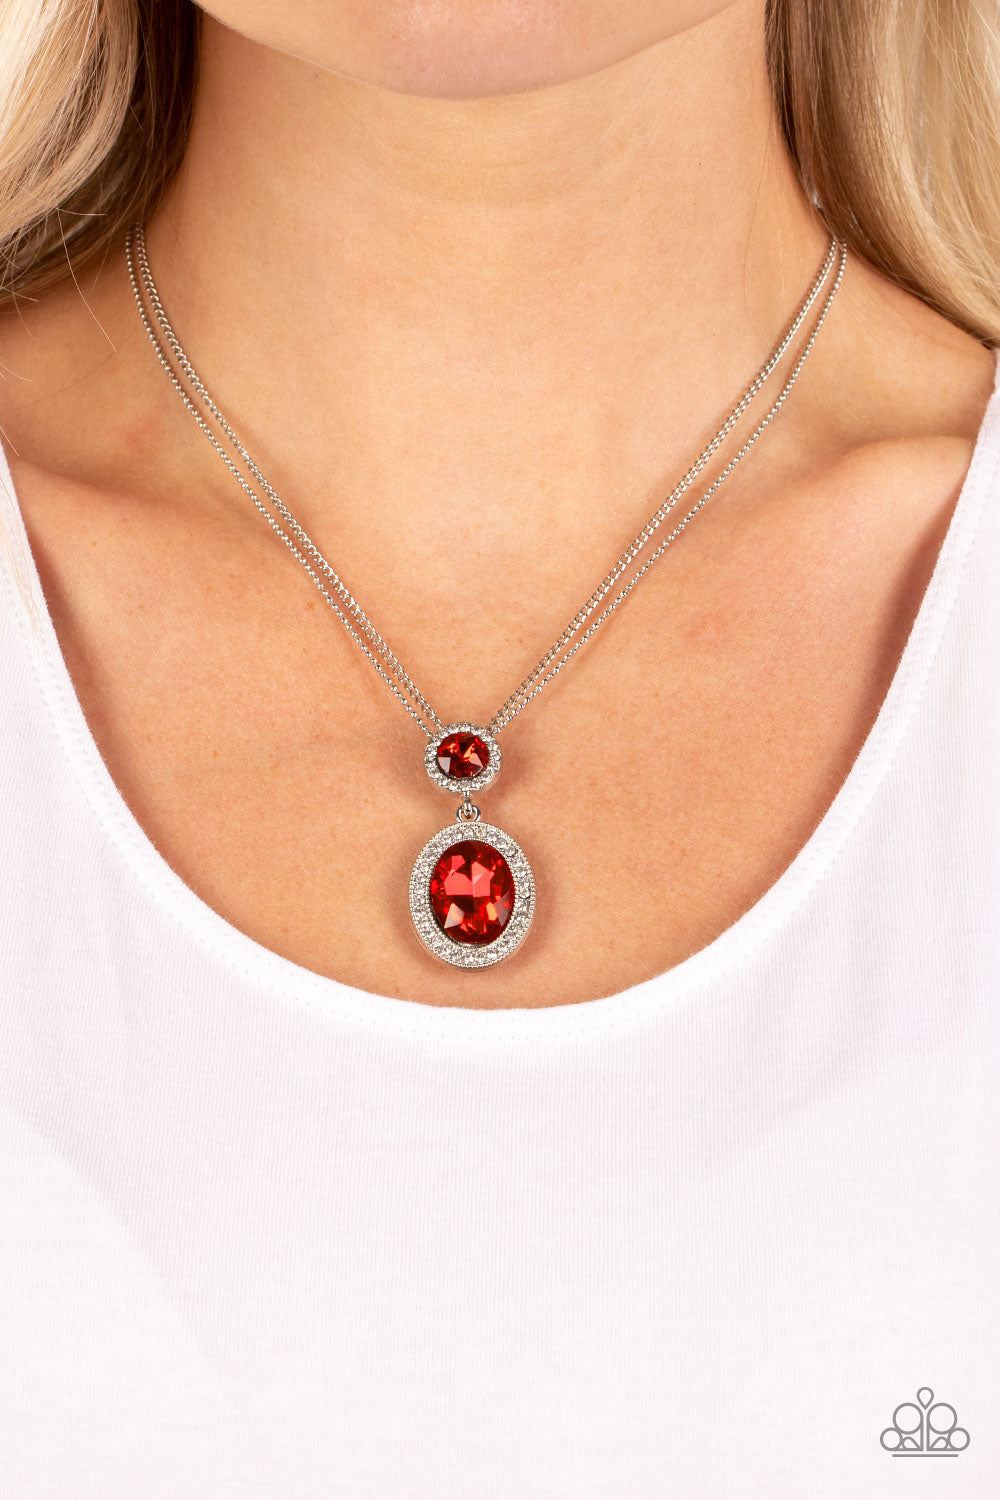 Paparazzi “Castle Diamonds” Red Necklace Earrings Set - Cindysblingboutique